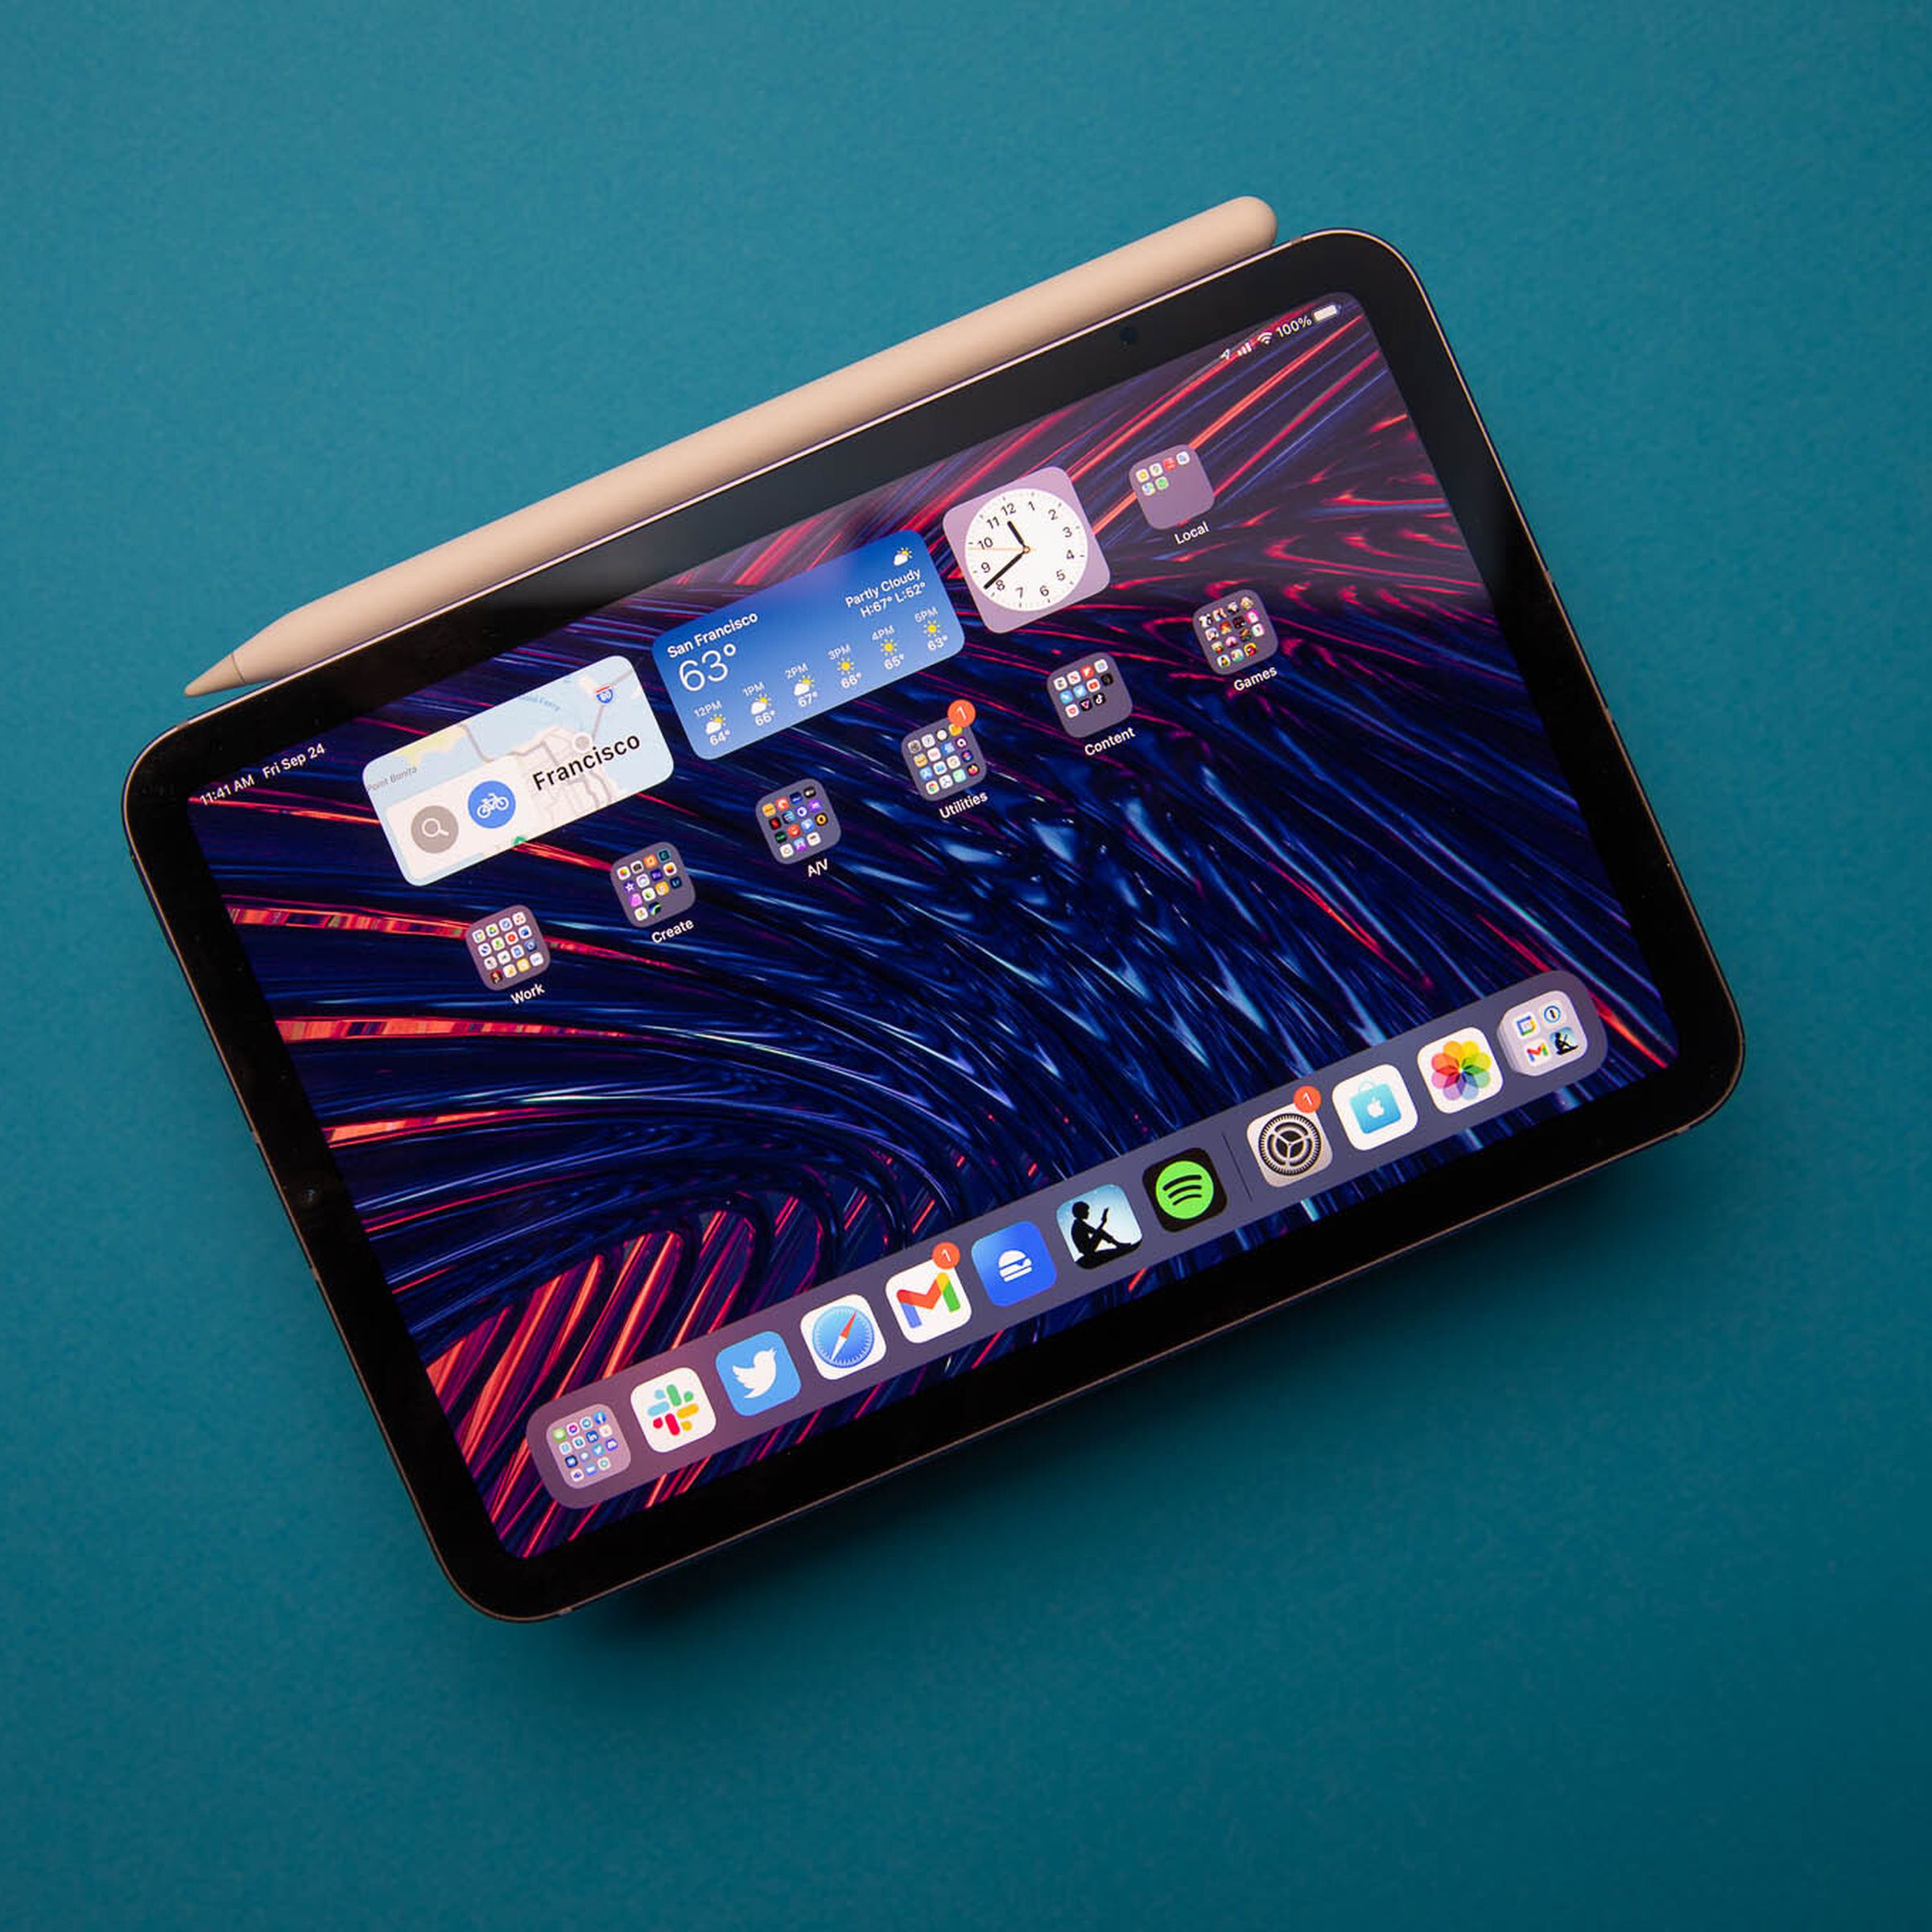 Foto do iPad mini 2021 com o Apple Pencil de segunda geração anexado contra um fundo azul